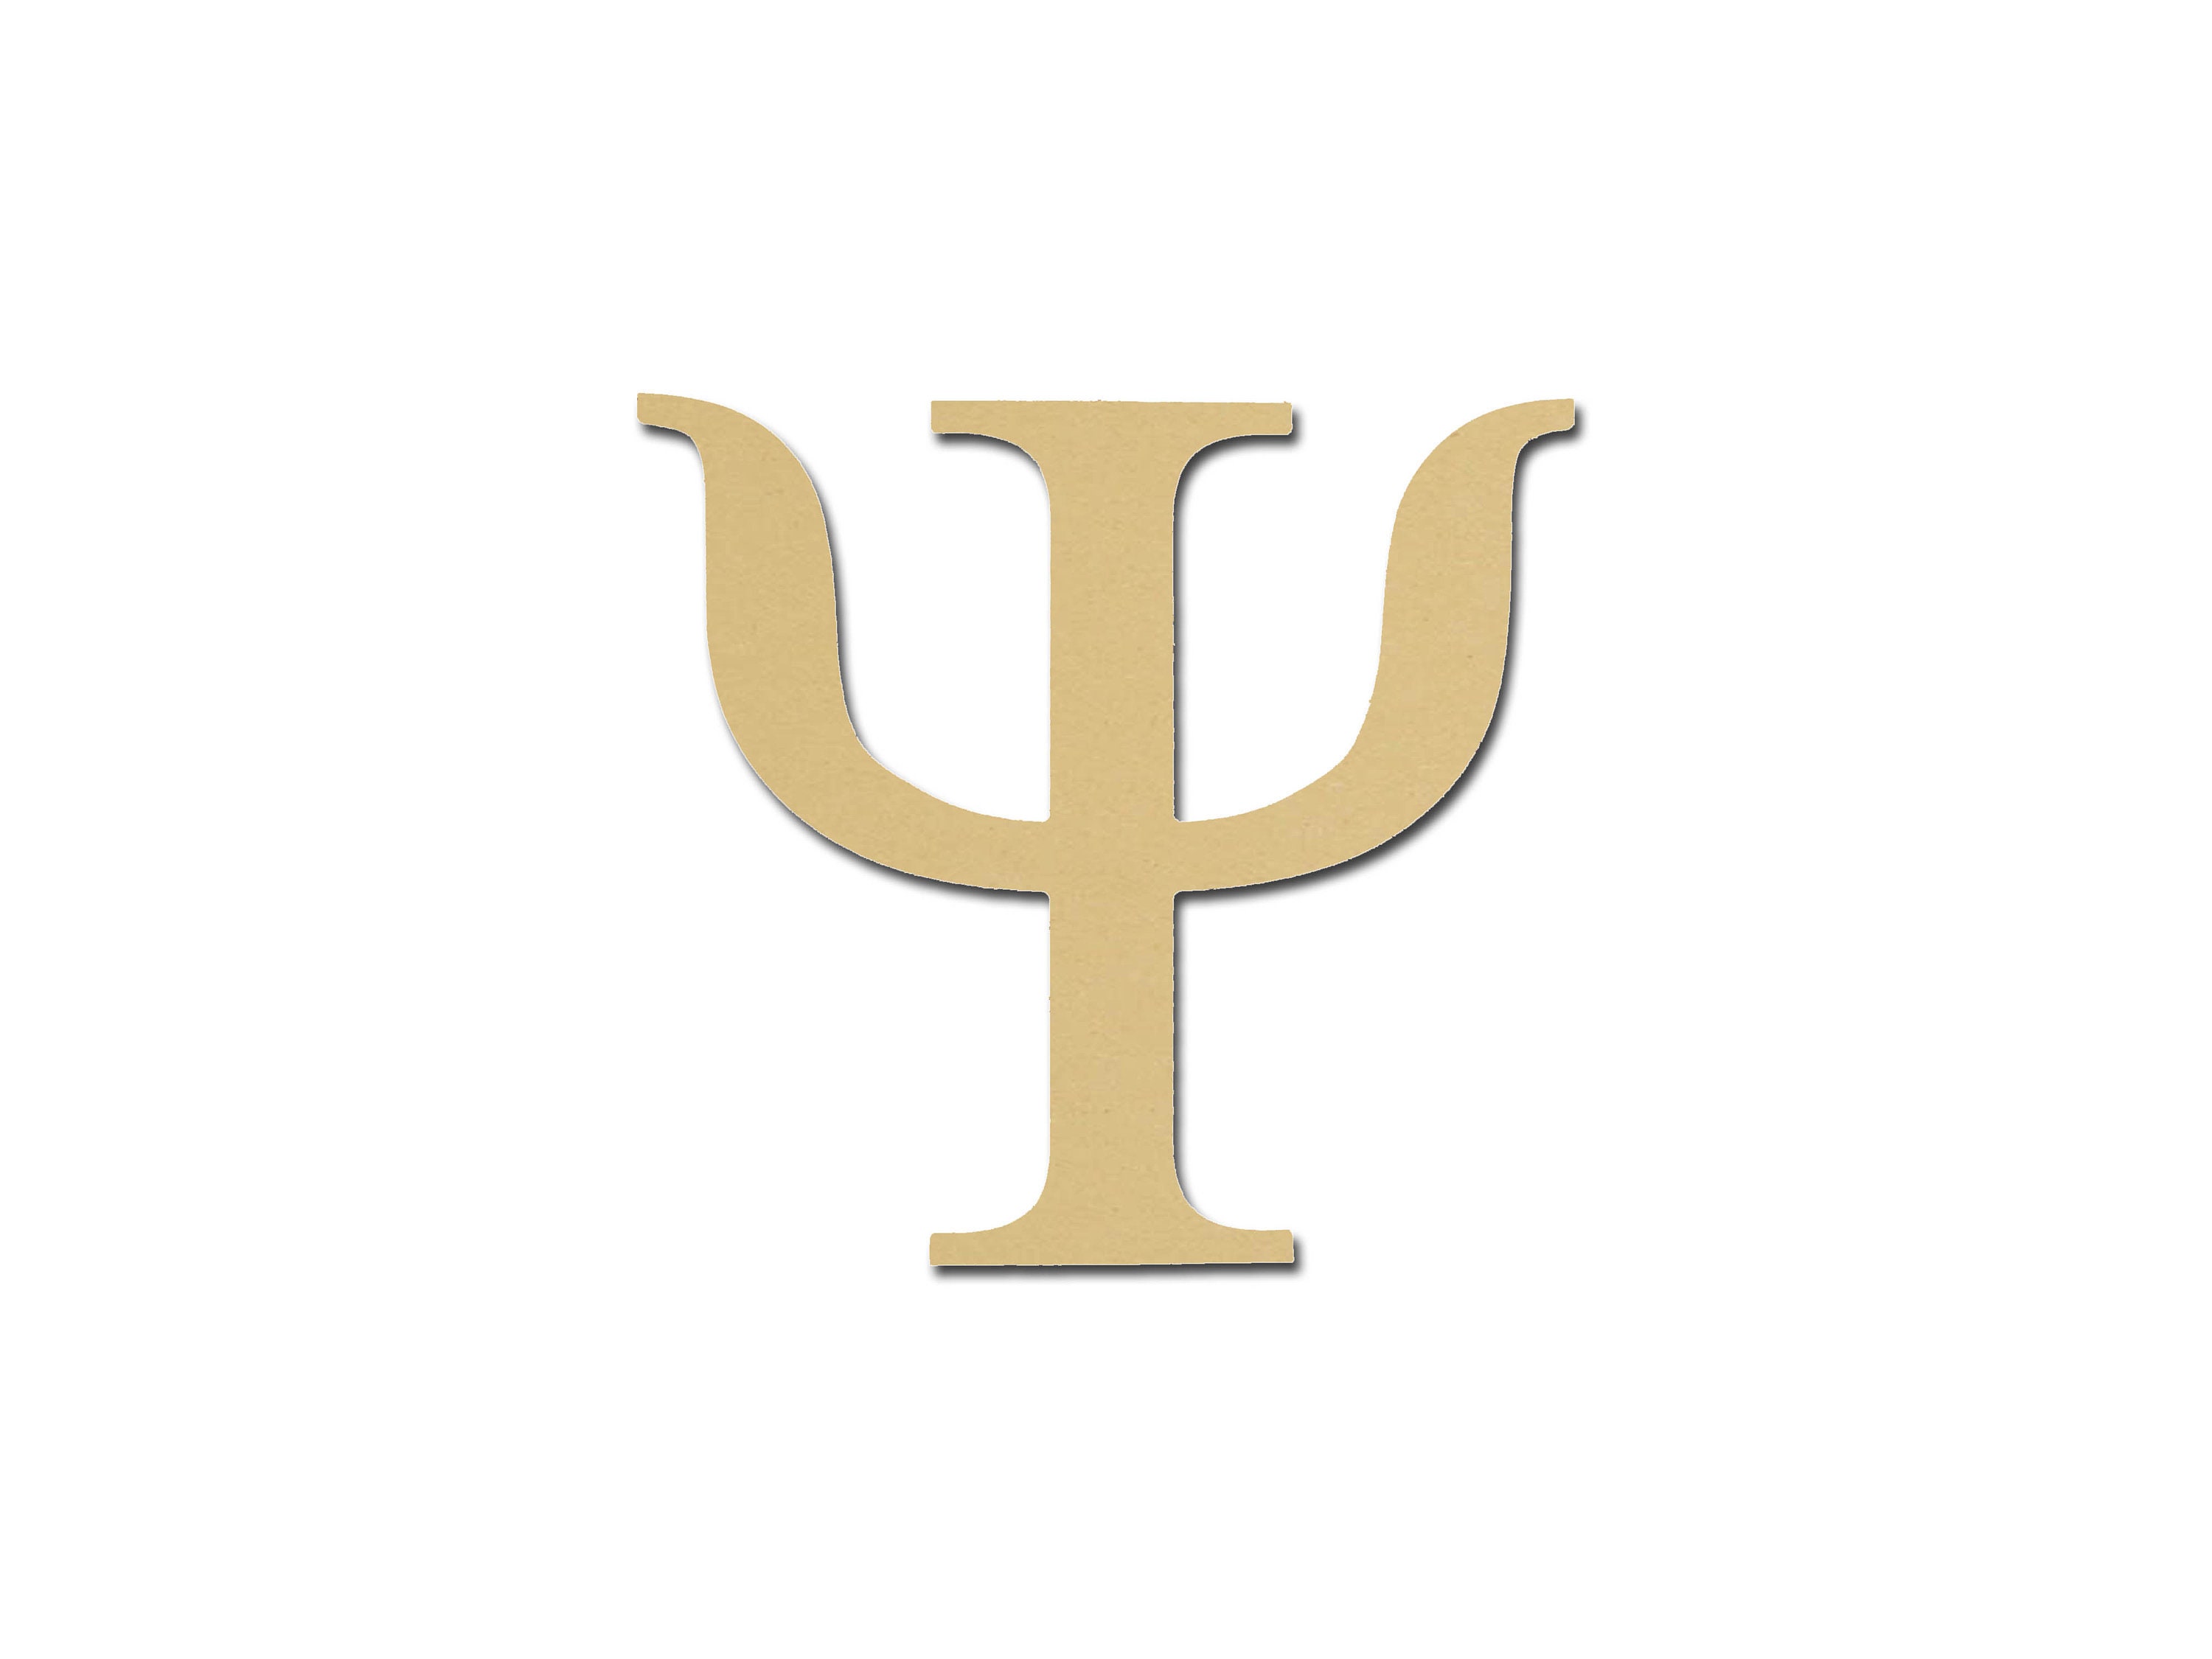 Psi Symbol Greek Letter Unfinished Wooden Letters 12 Etsy